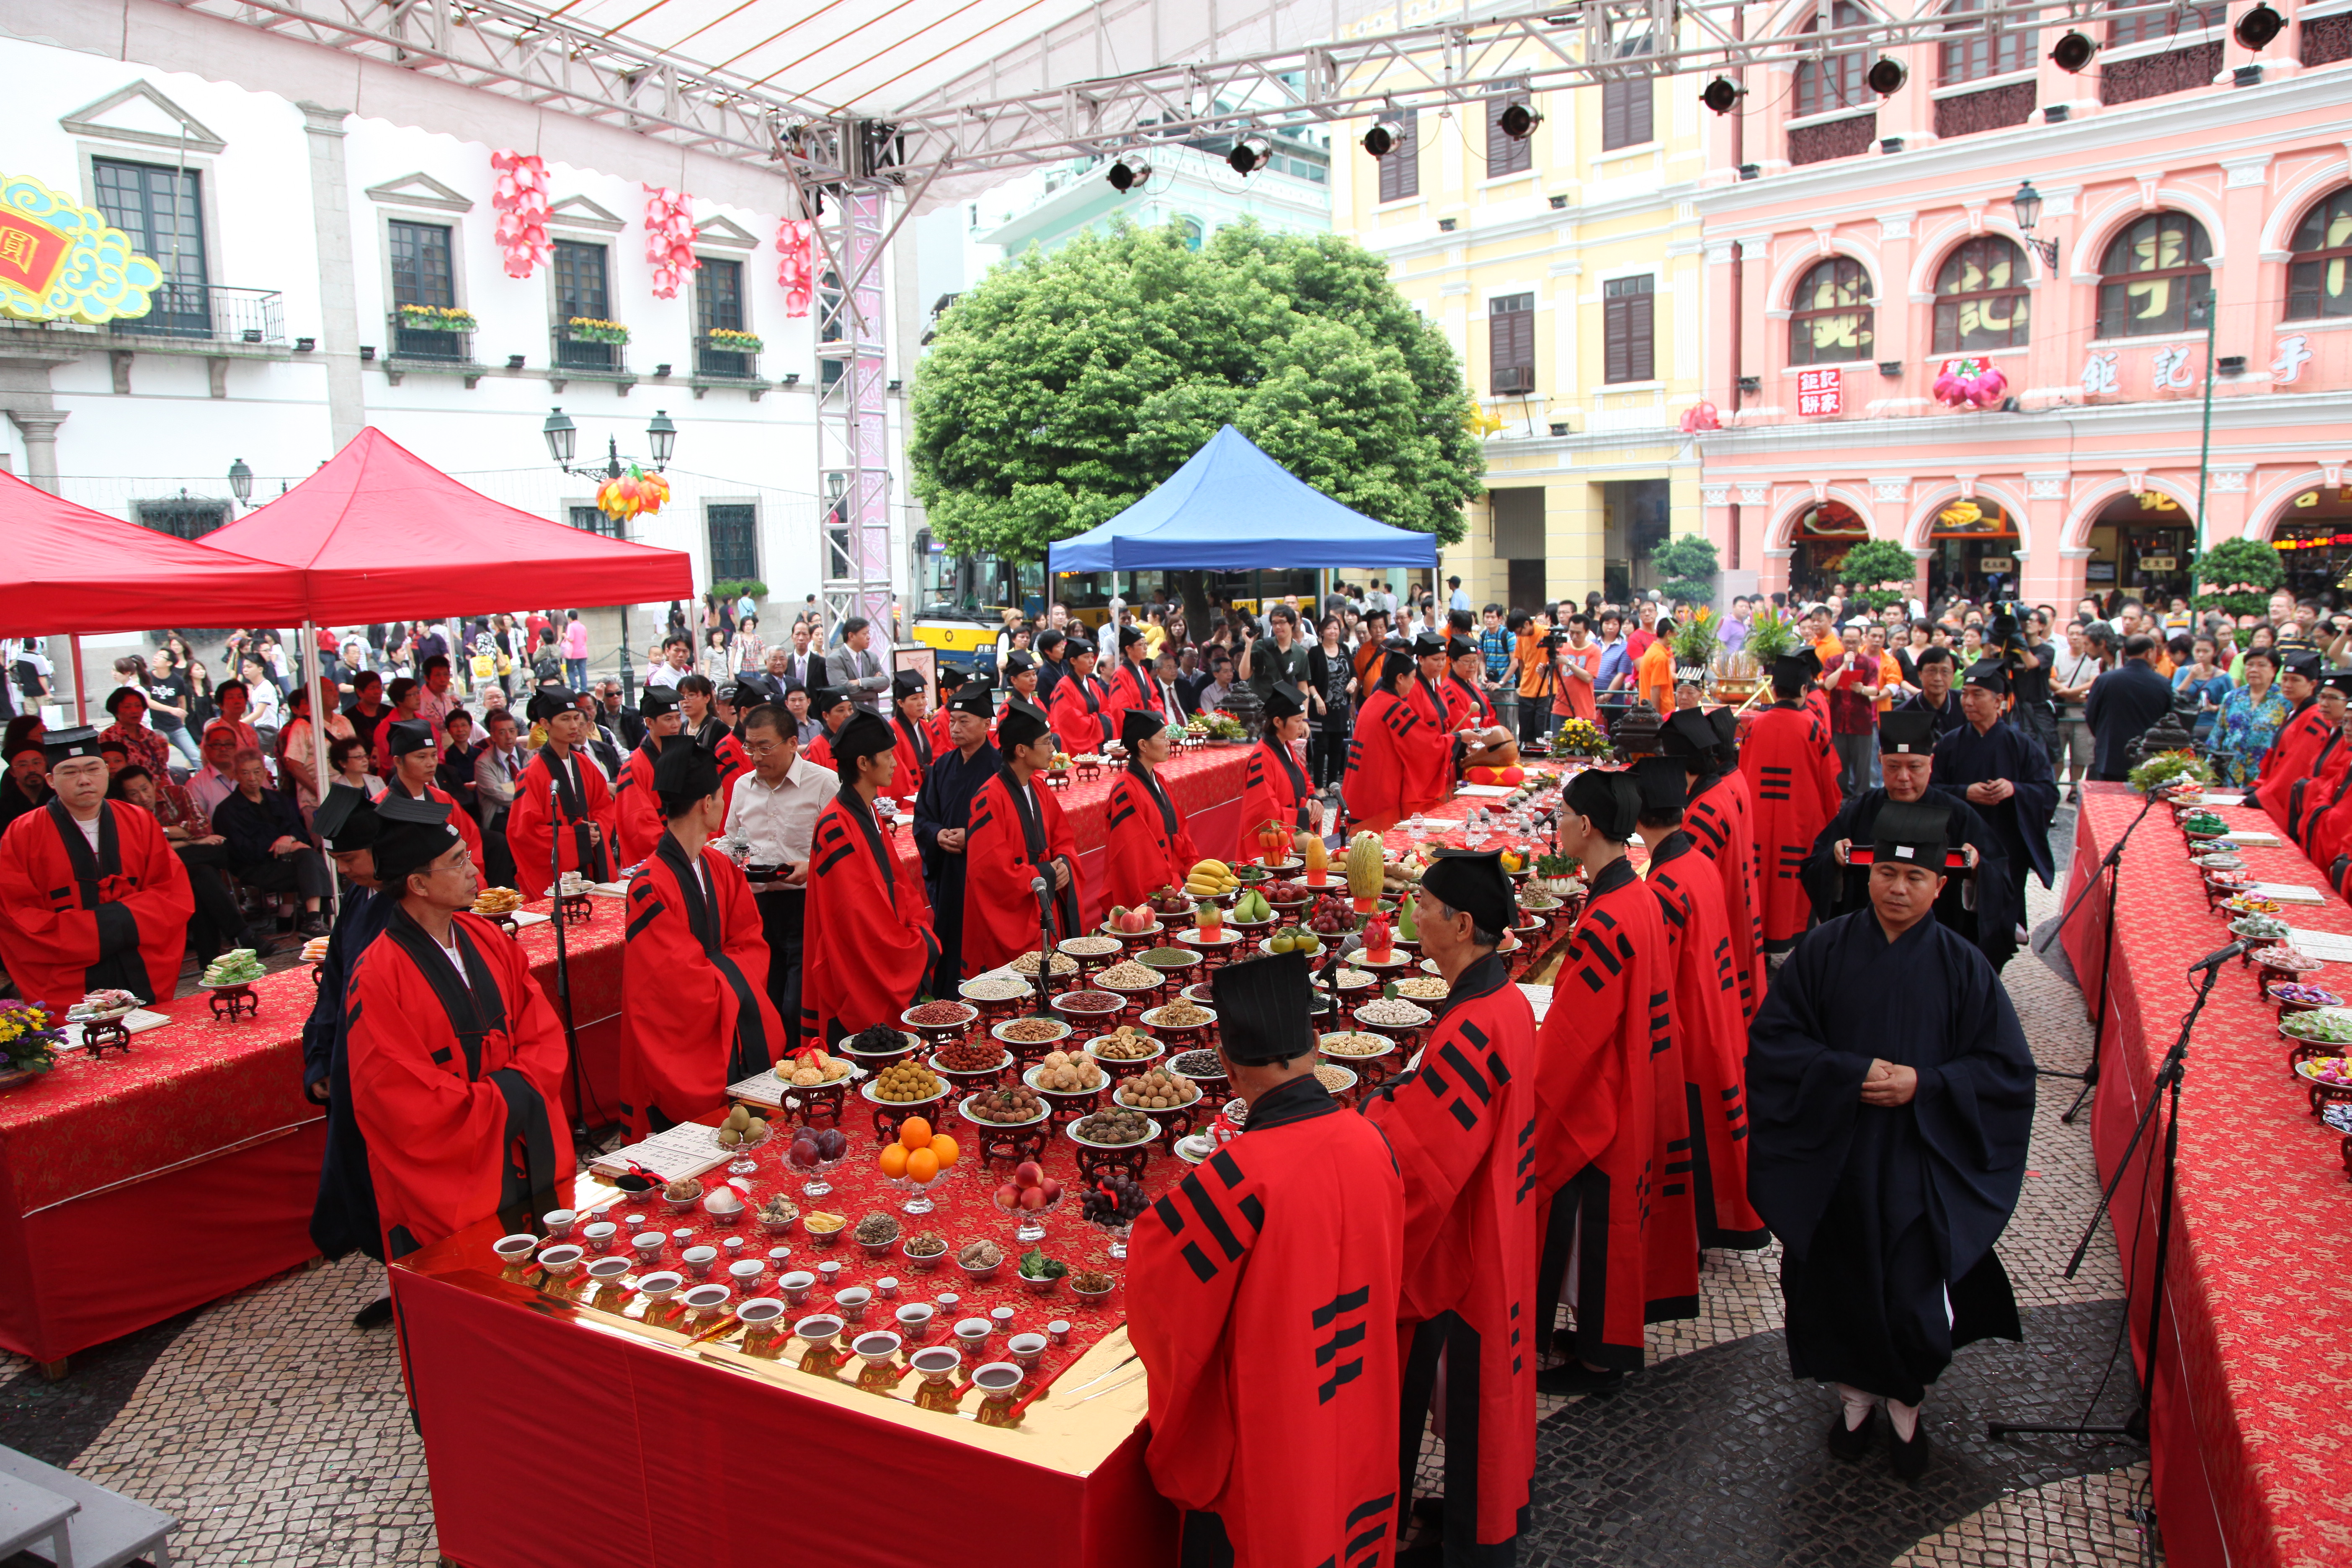 2011道教文化节